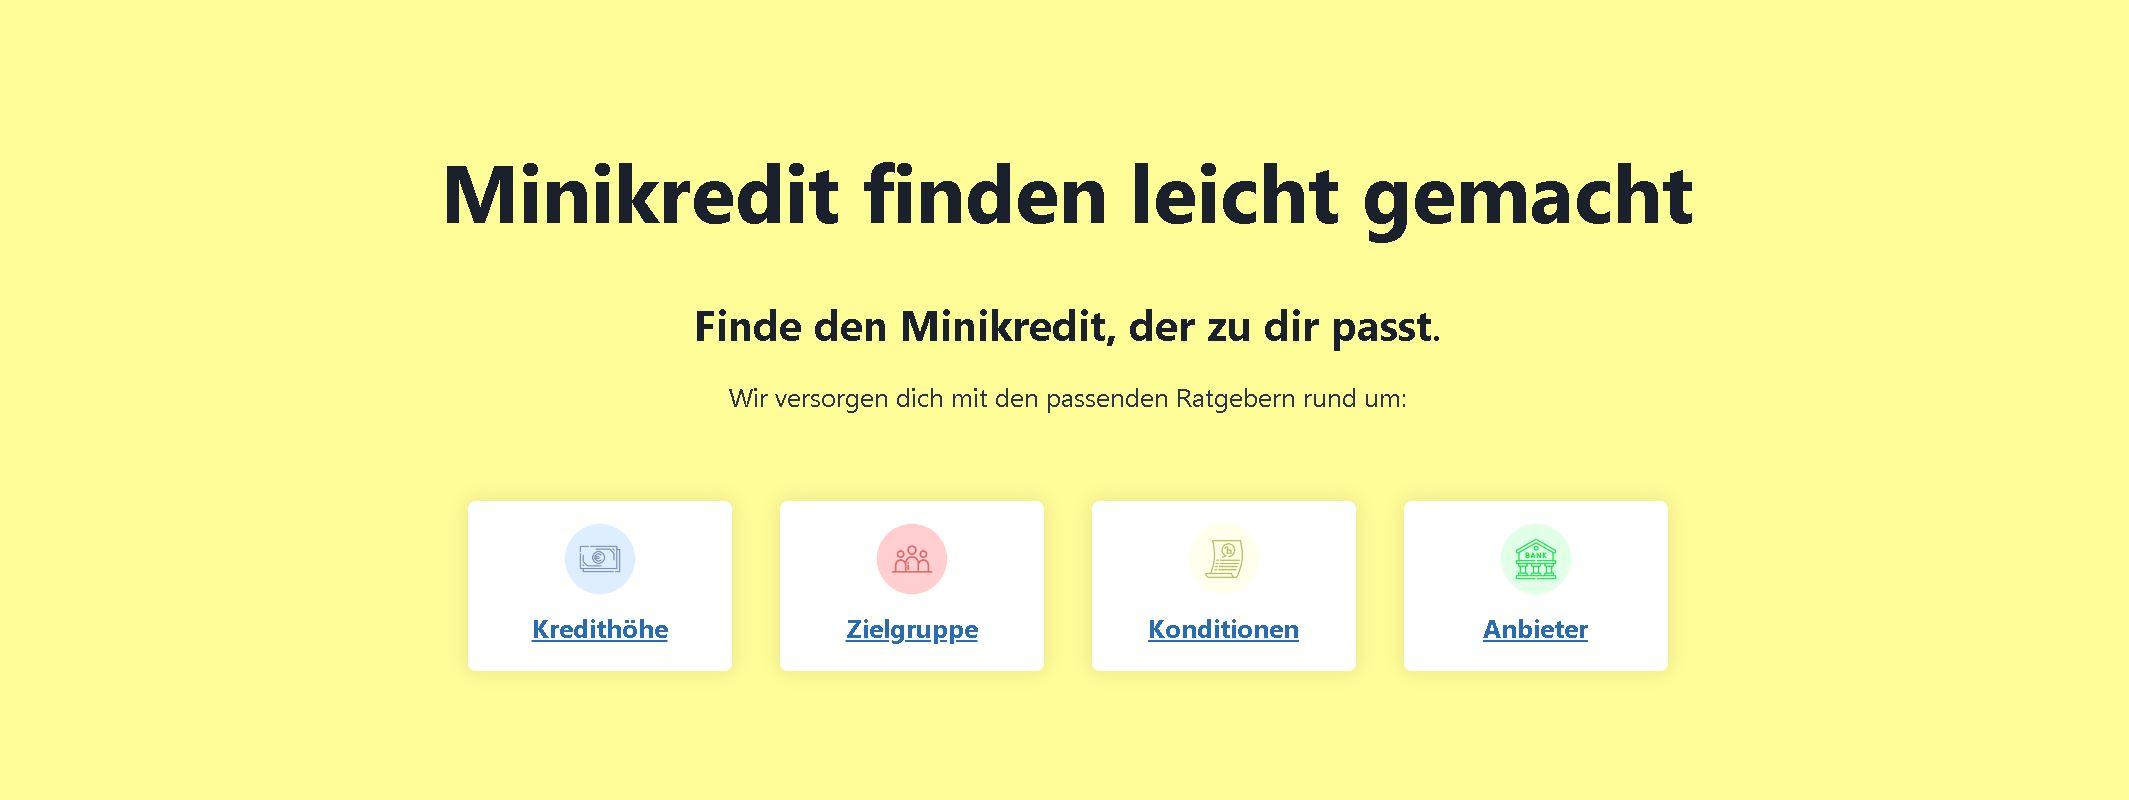 minikredite.org / startup von Dresden / Background